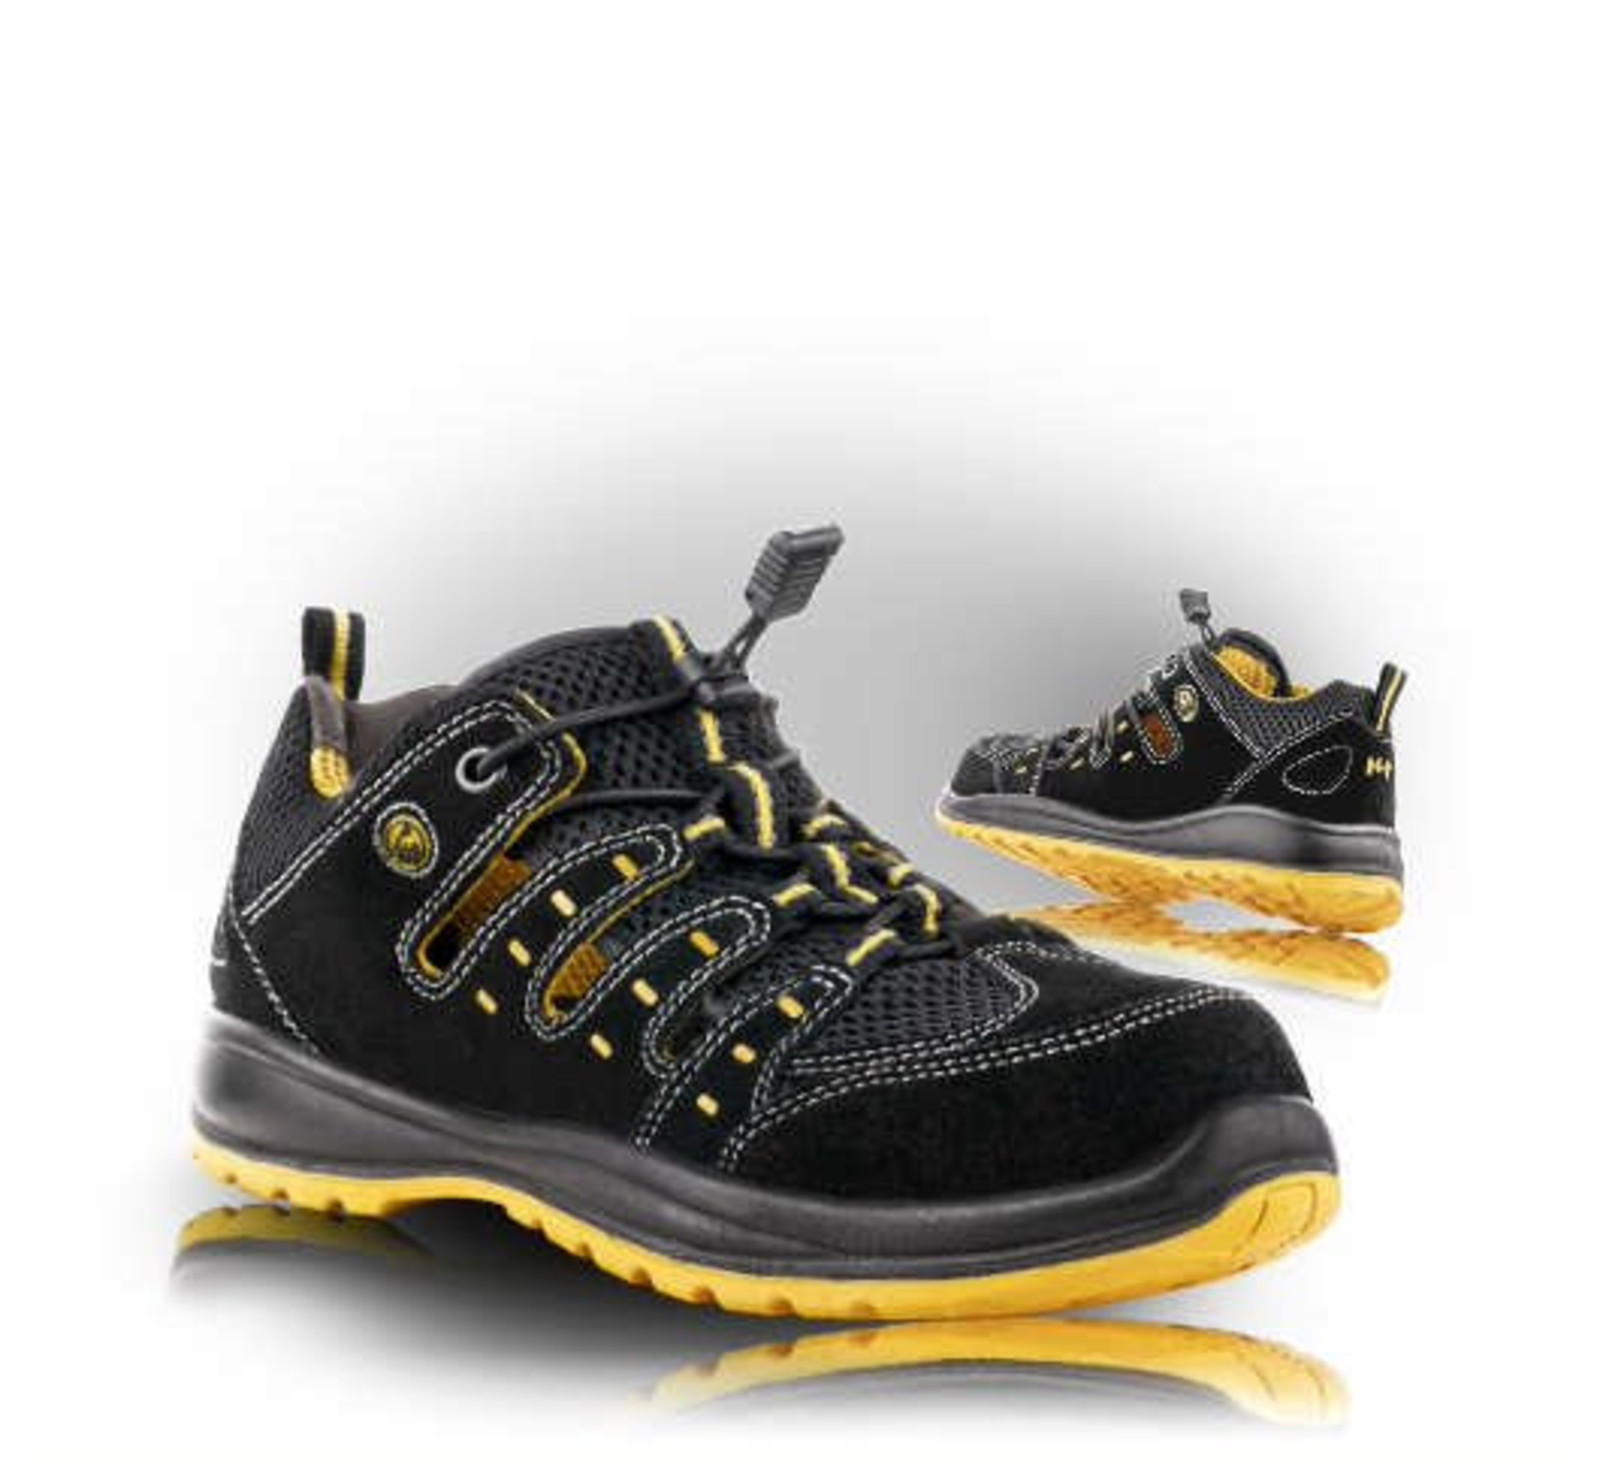 Bezpečnostné sandále Memphis S1 ESD - veľkosť: 48, farba: čierna/žltá